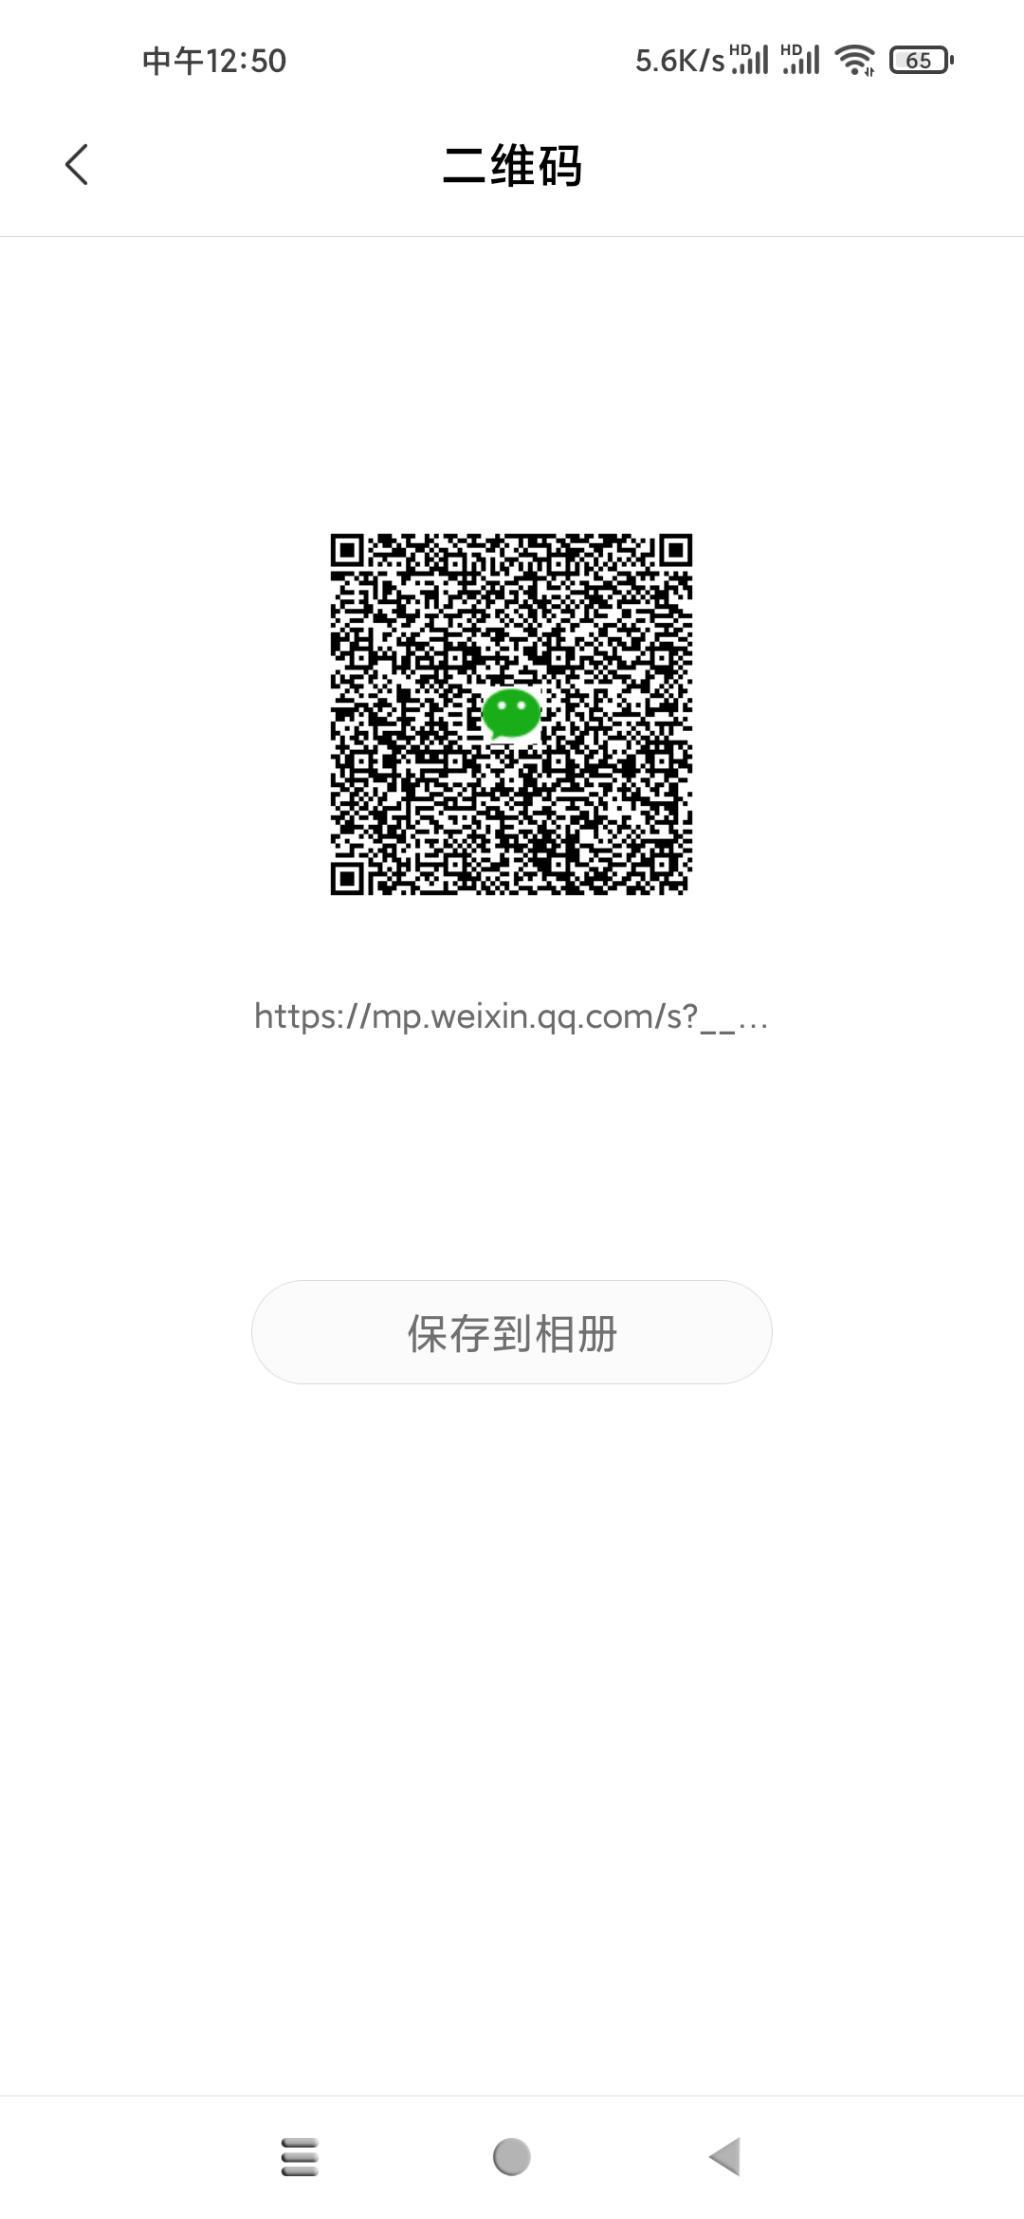 V.x抽奖红包50000个-惠小助(52huixz.com)